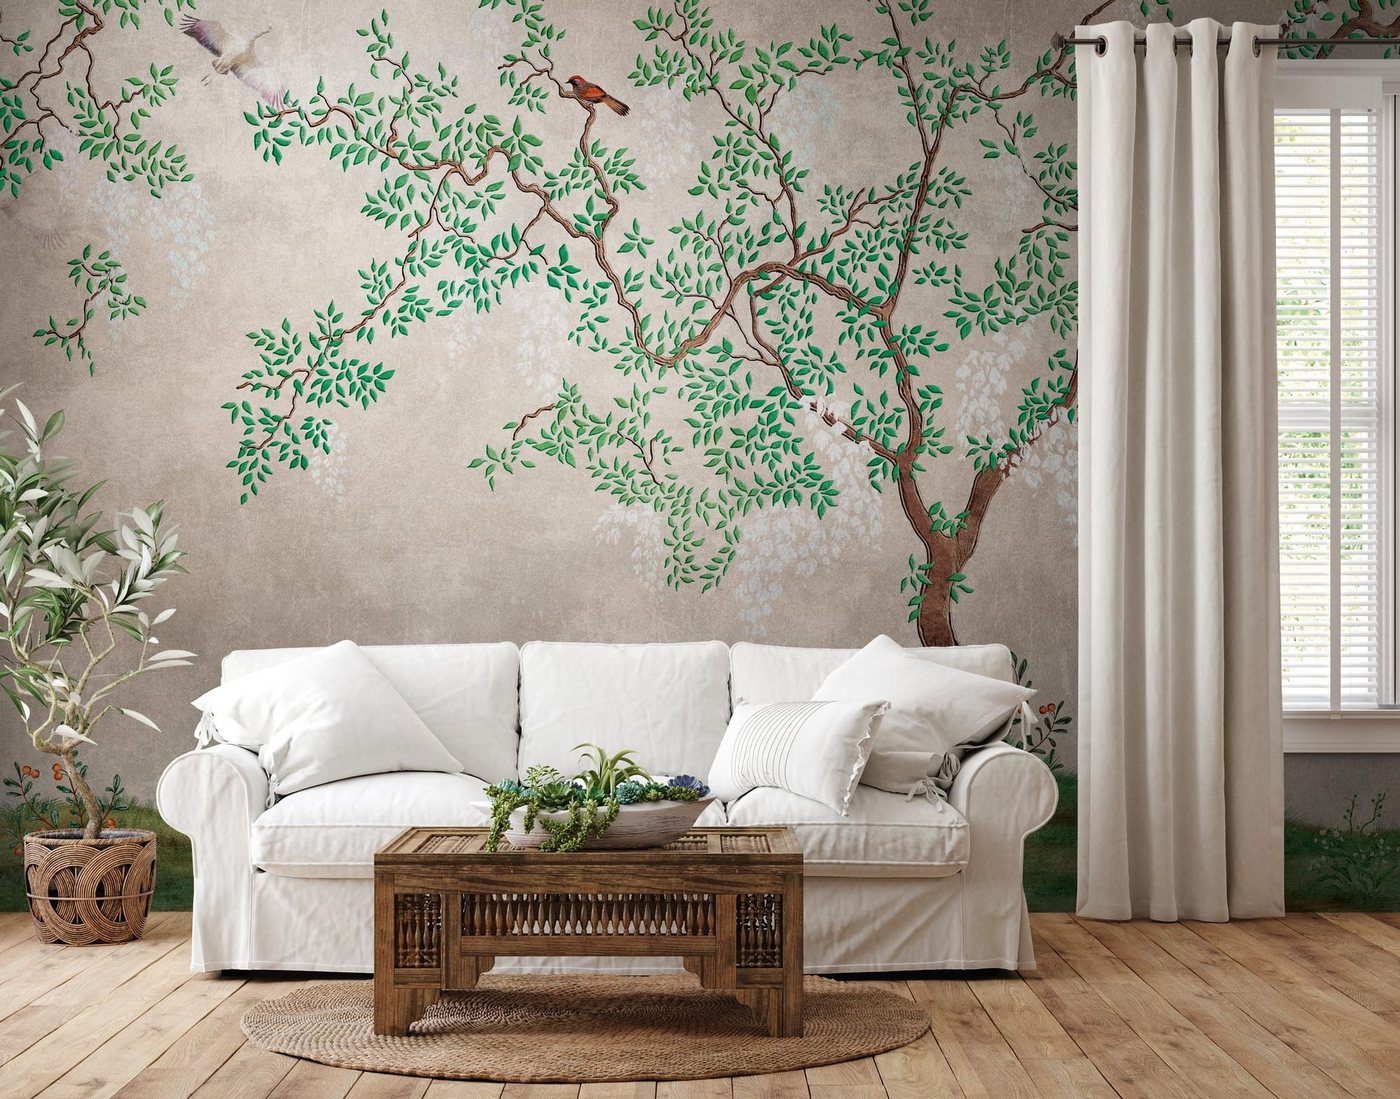 Newroom Vliestapete, [ 2,8 x 3,71 m ] großzügiges Motiv - kein wiederkehrendes Muster - nahtlos große Flächen möglich - Fototapete Wandbild Bäume Vögel Blätter Made in Germany von Newroom